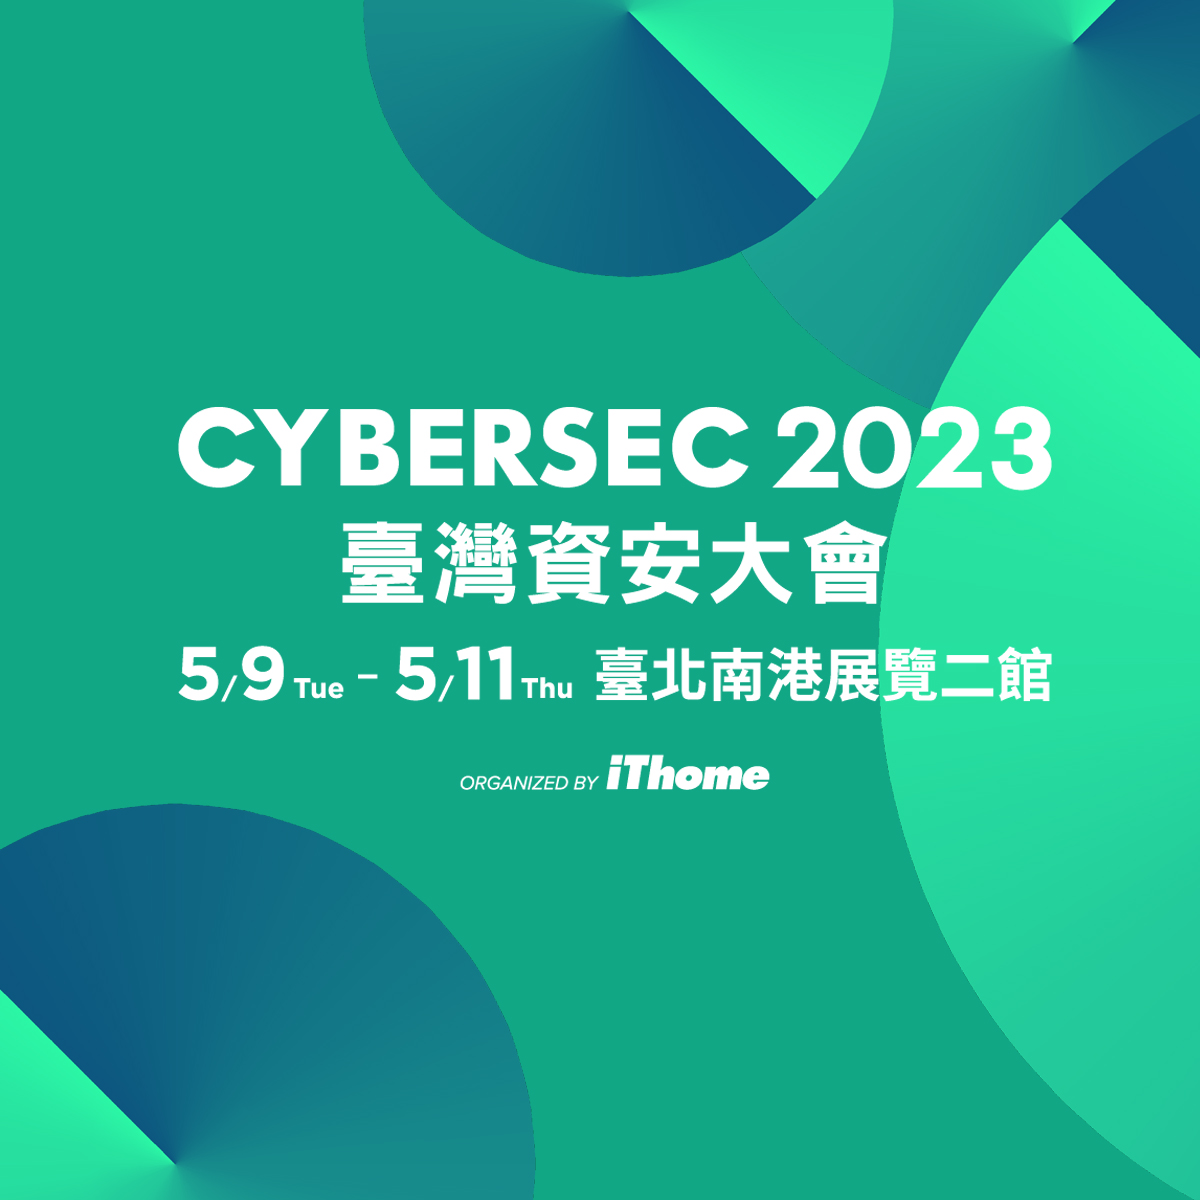 【雲端活動】2023 CYBERSEC台灣資安大會-實戰 Open Source 安全